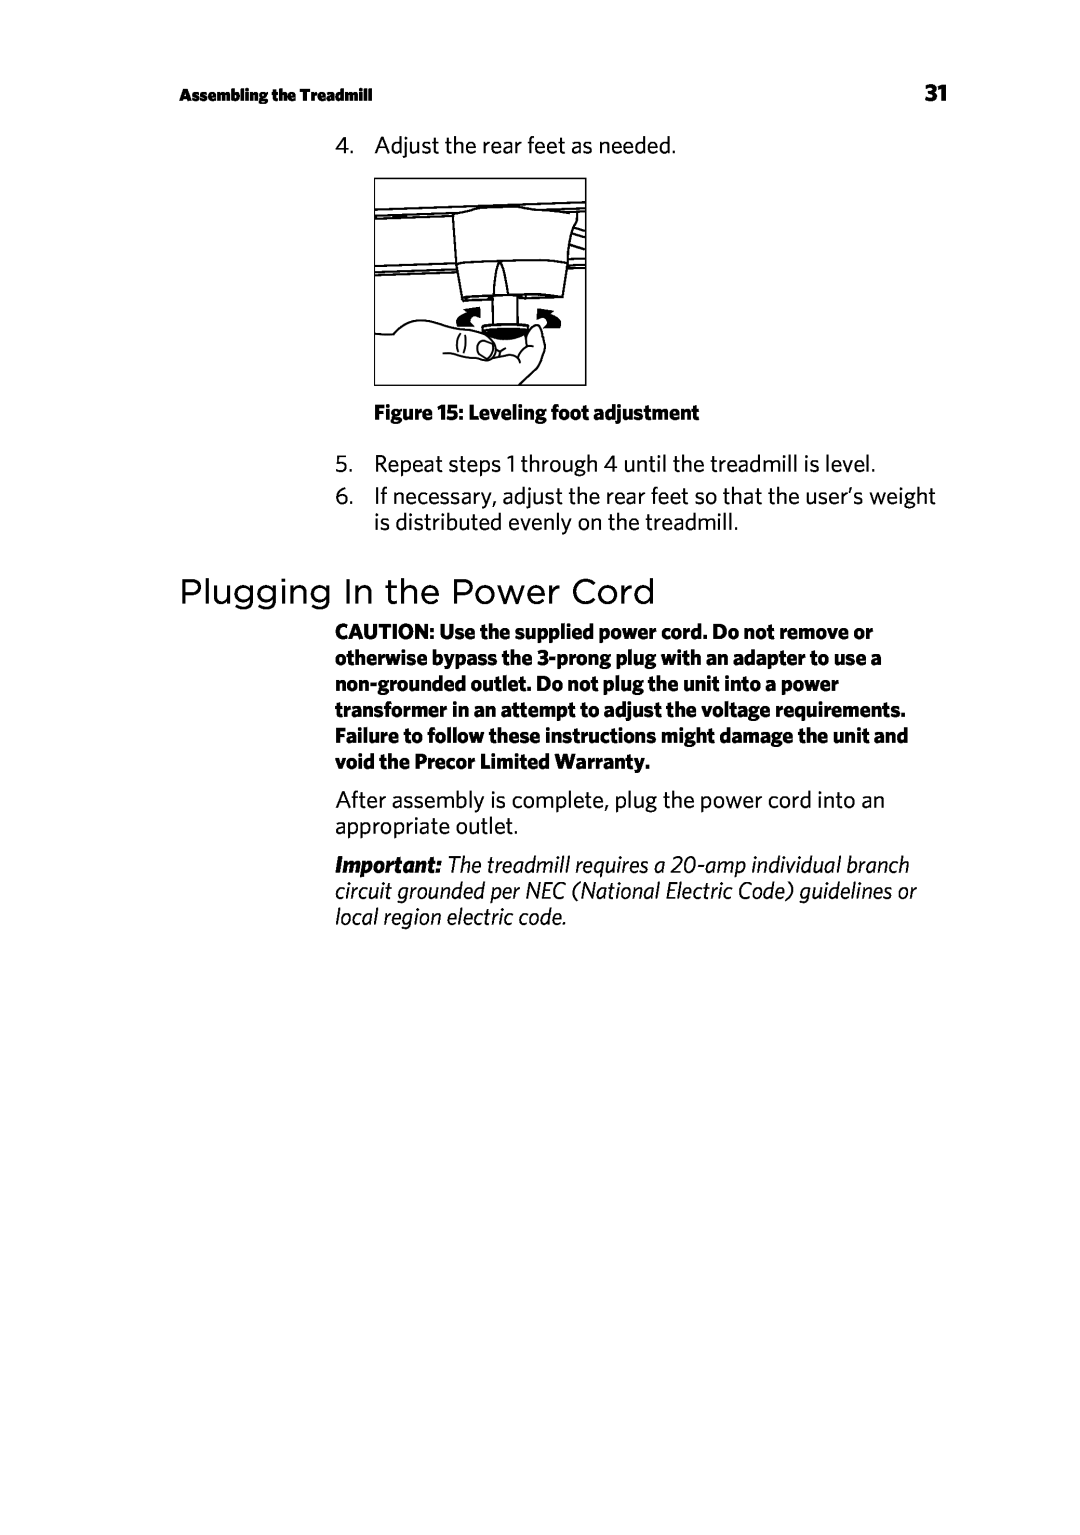 Precor P80 manual Plugging In the Power Cord 